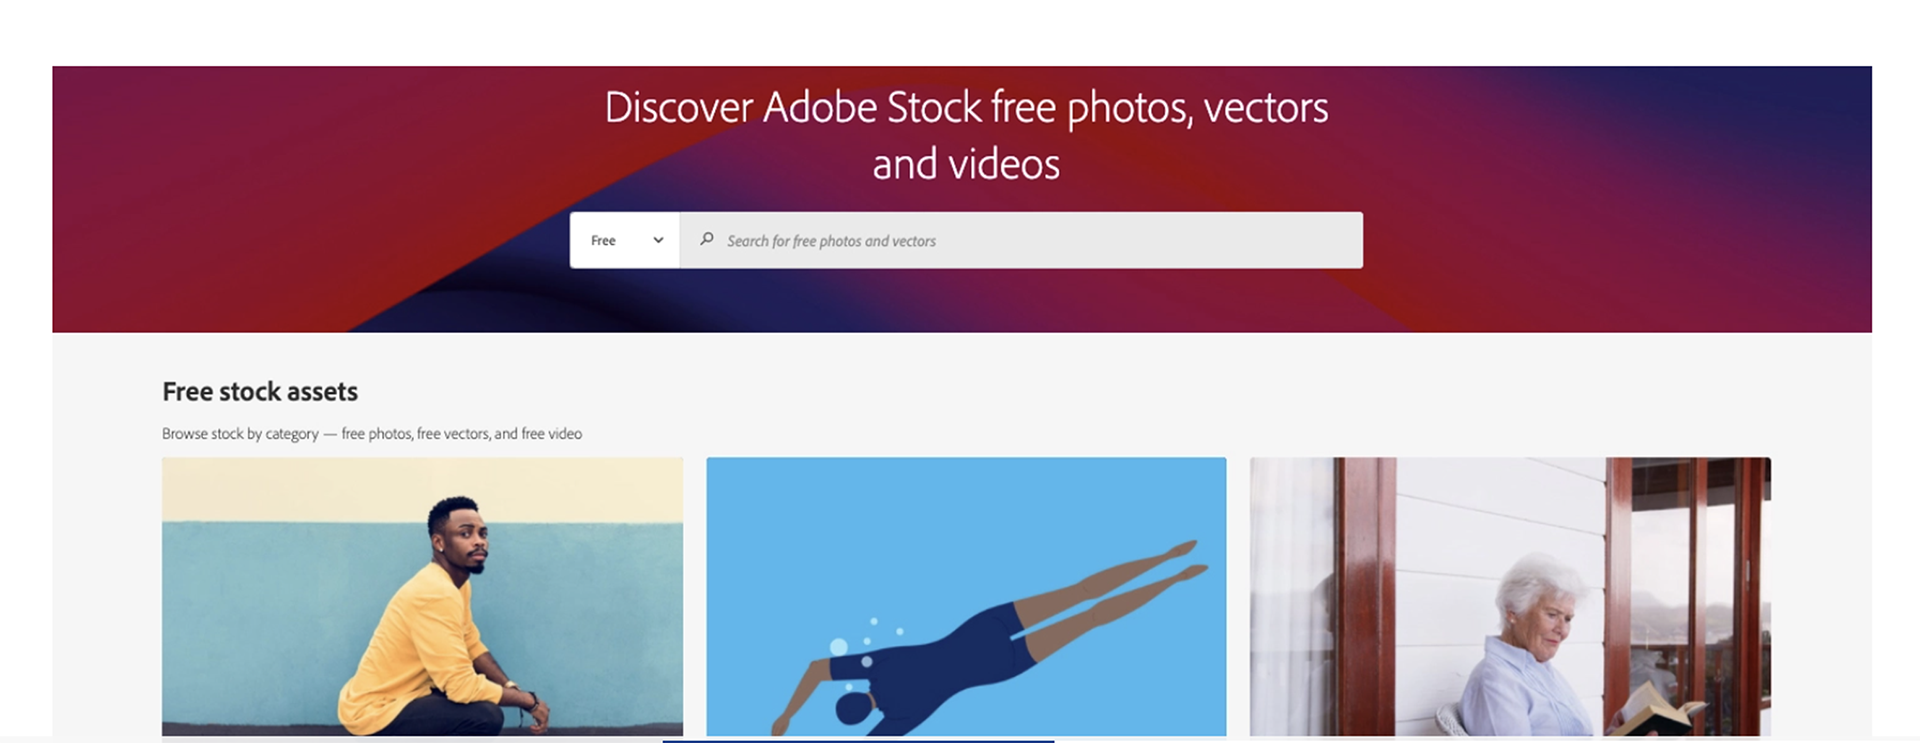 Adobe dévoile une collection de 70 000 images gratuites